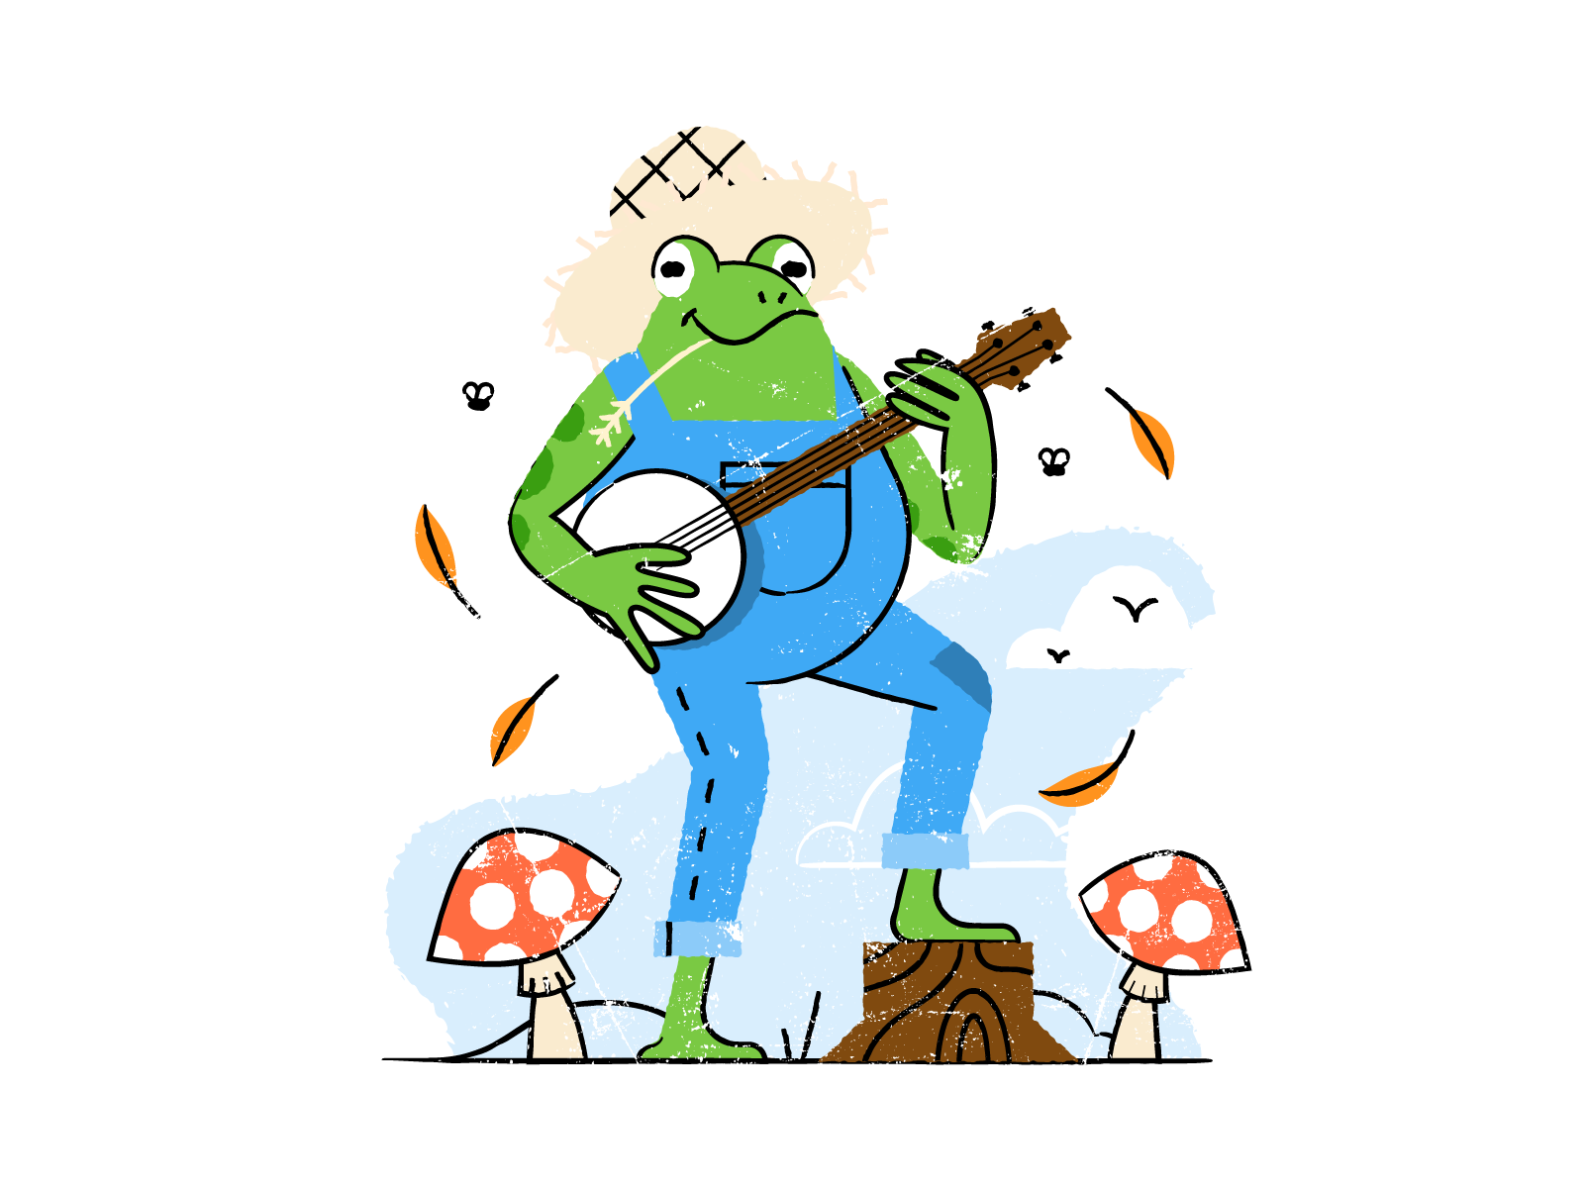 Frog playing banjo by Sander de Wekker on Dribbble